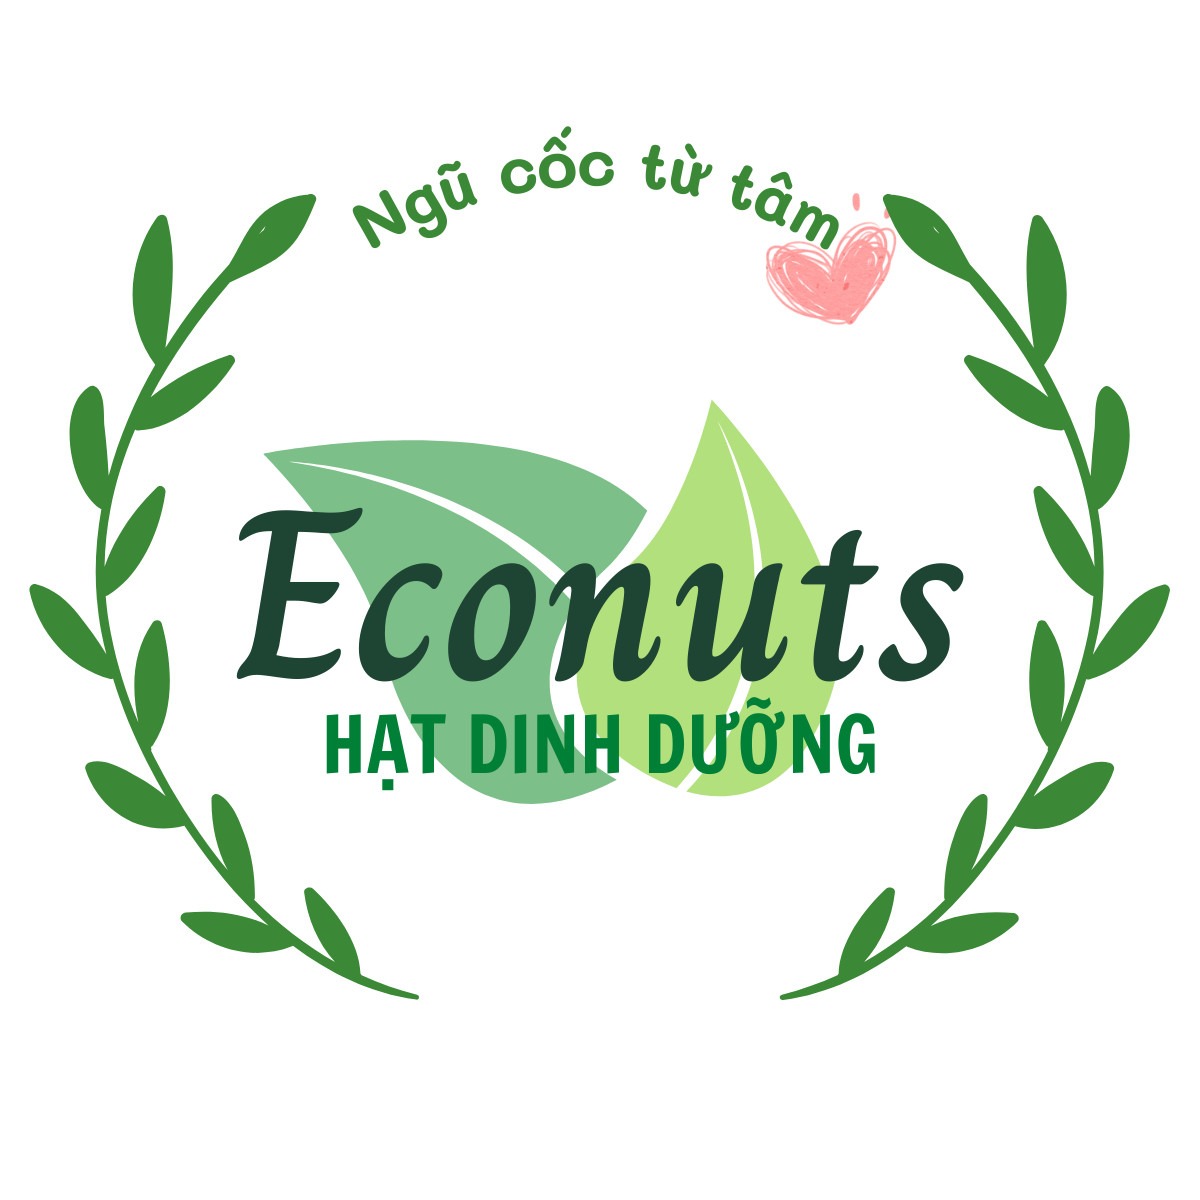 Hạt dinh dưỡng - Econuts